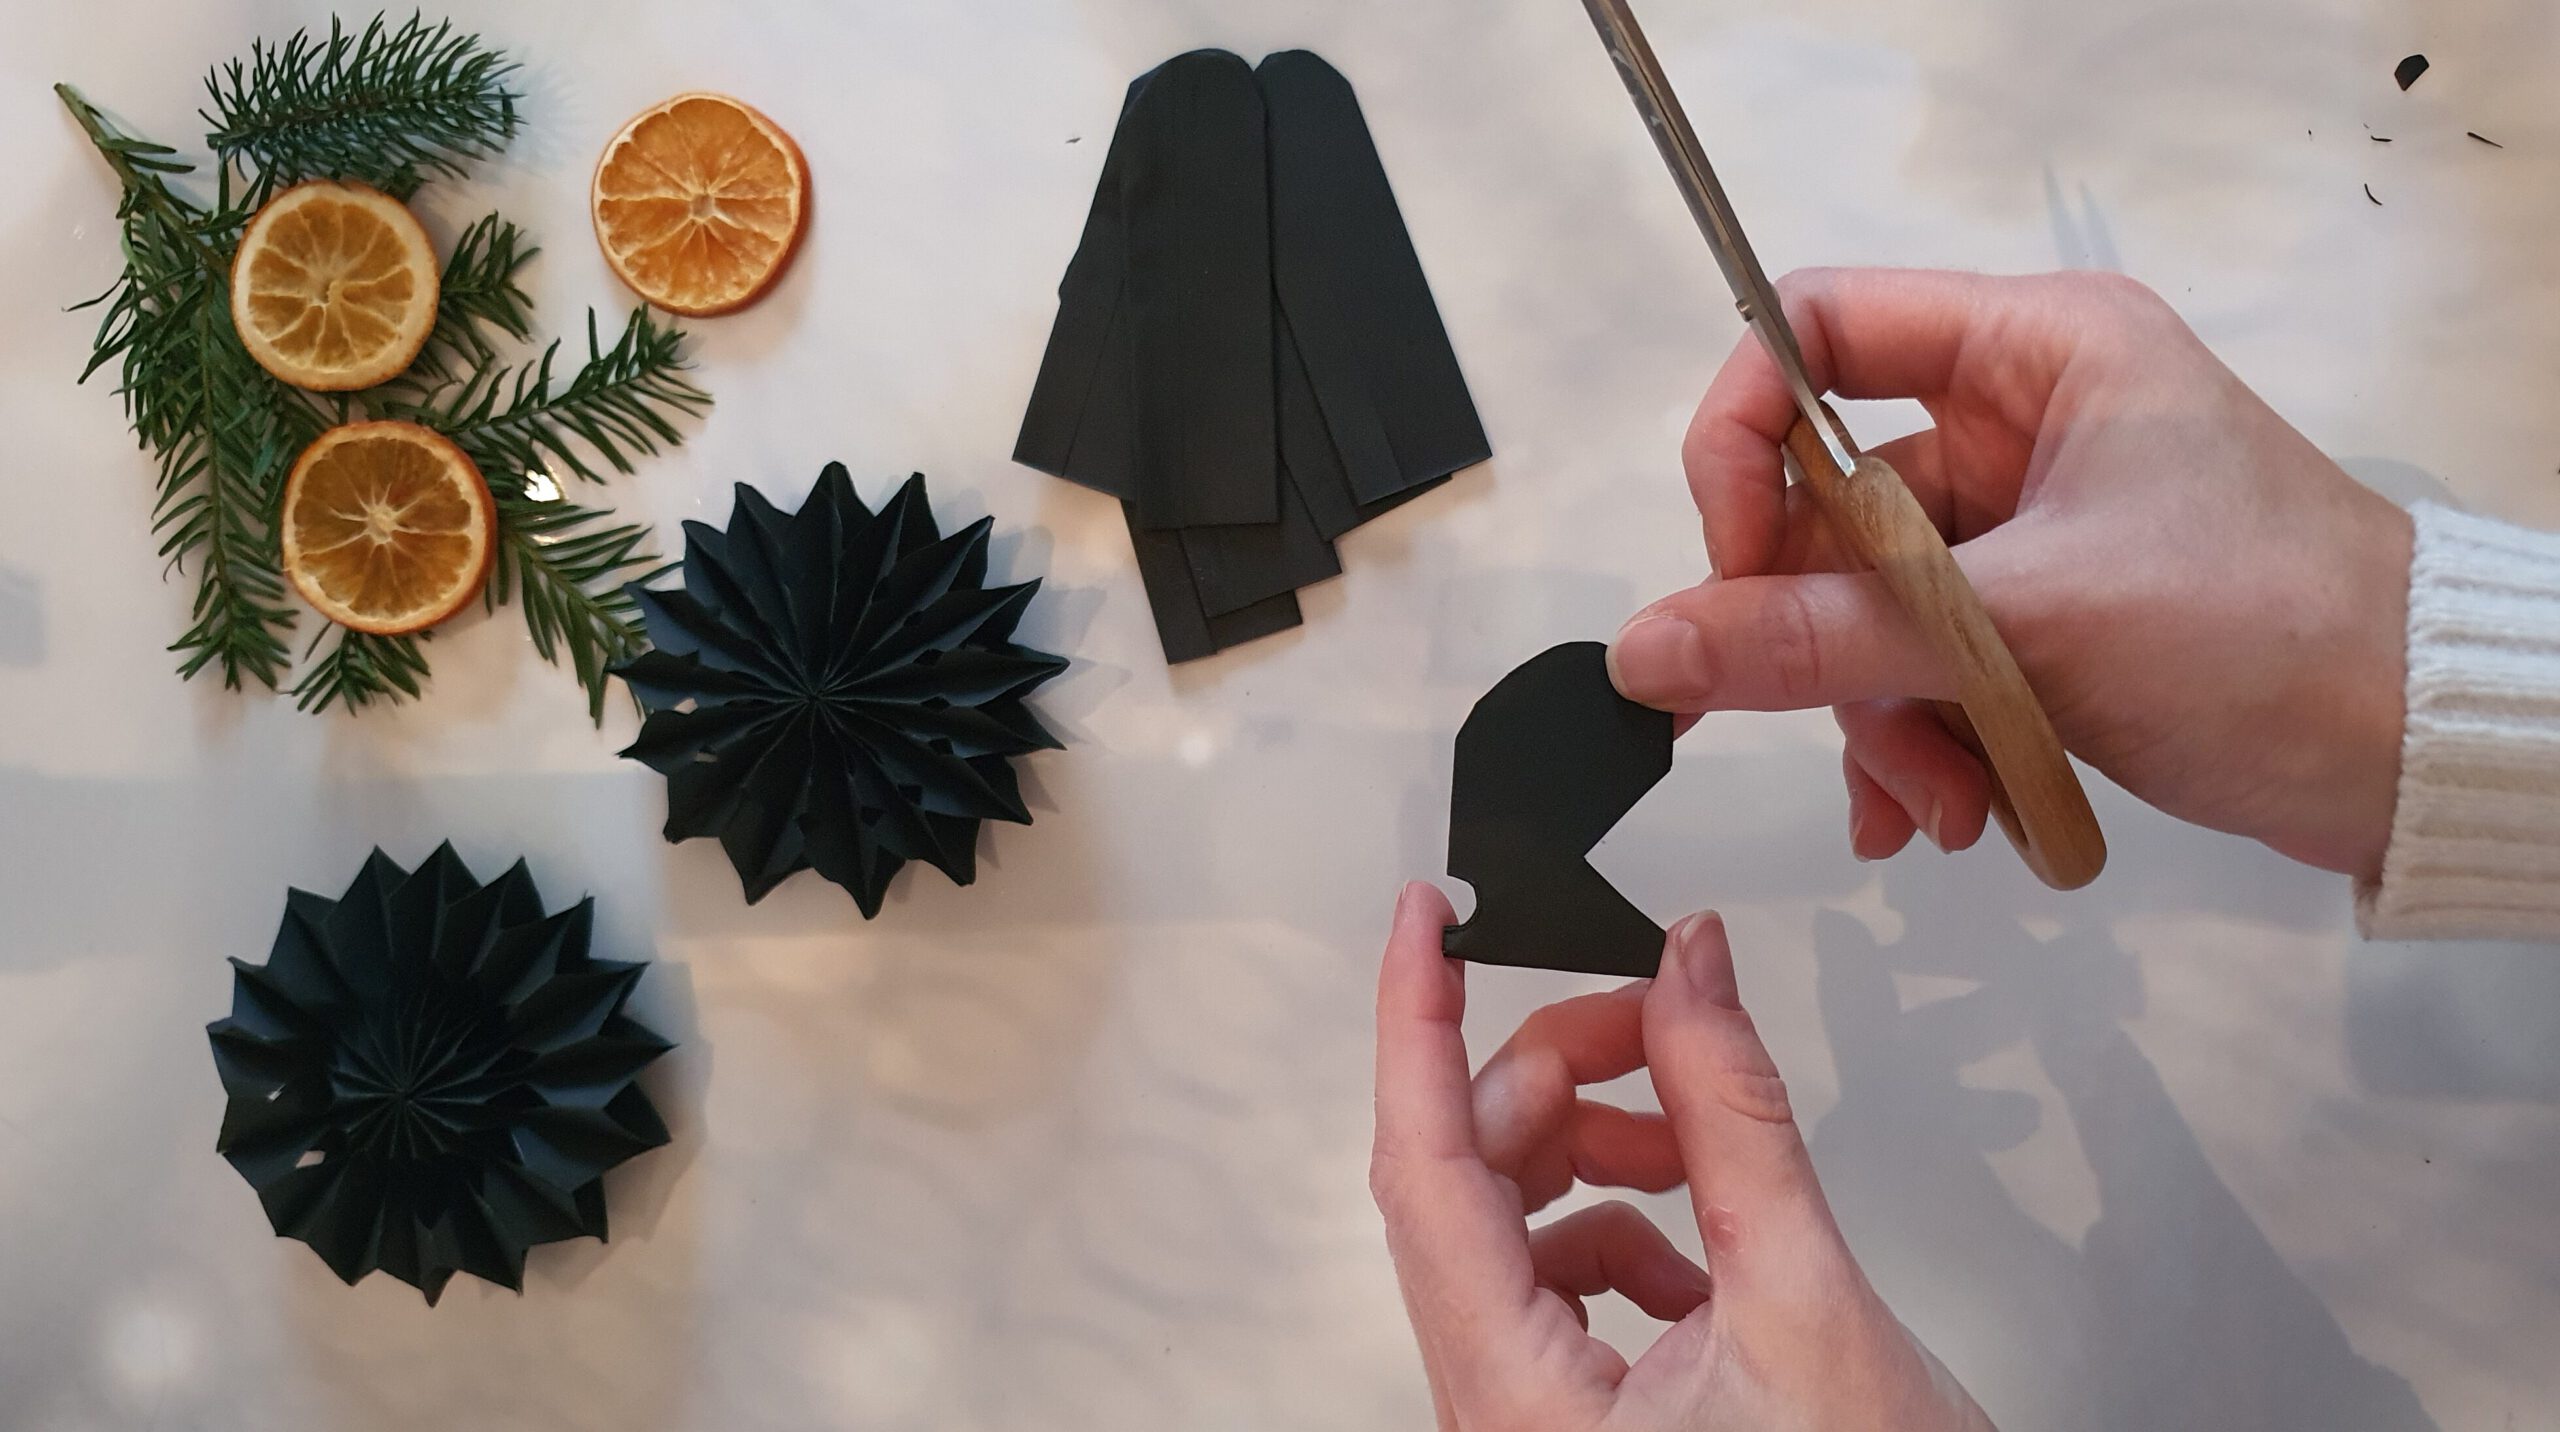 Papiersterne basteln für selbstgemachte Weihnachtsdekoration Schritt 3: Muster schneiden